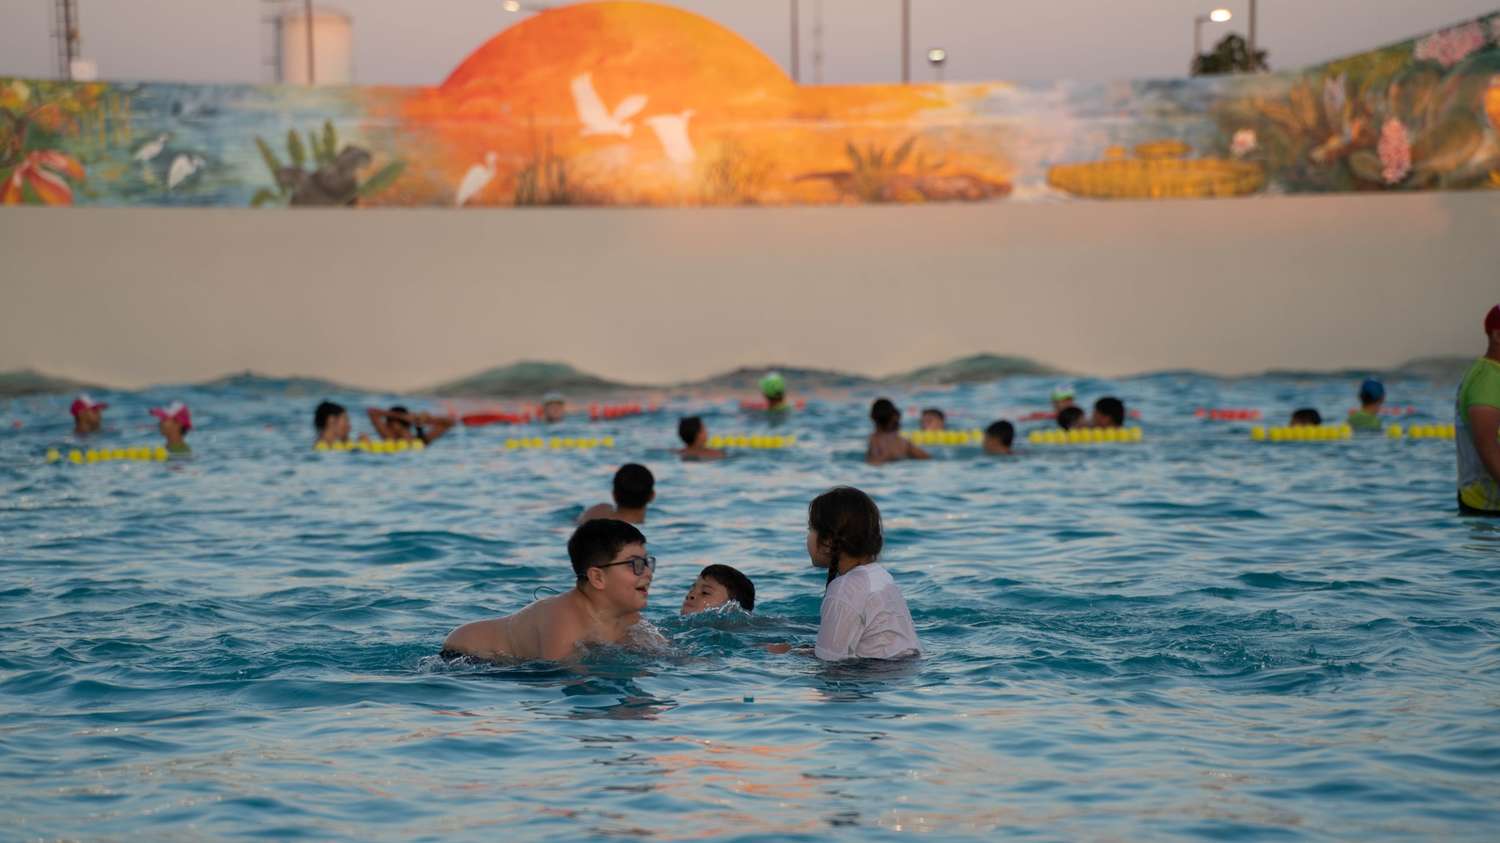 Darán clases de natación de acceso libre y gratuito en el Parque Acuático “17 de Octubre”